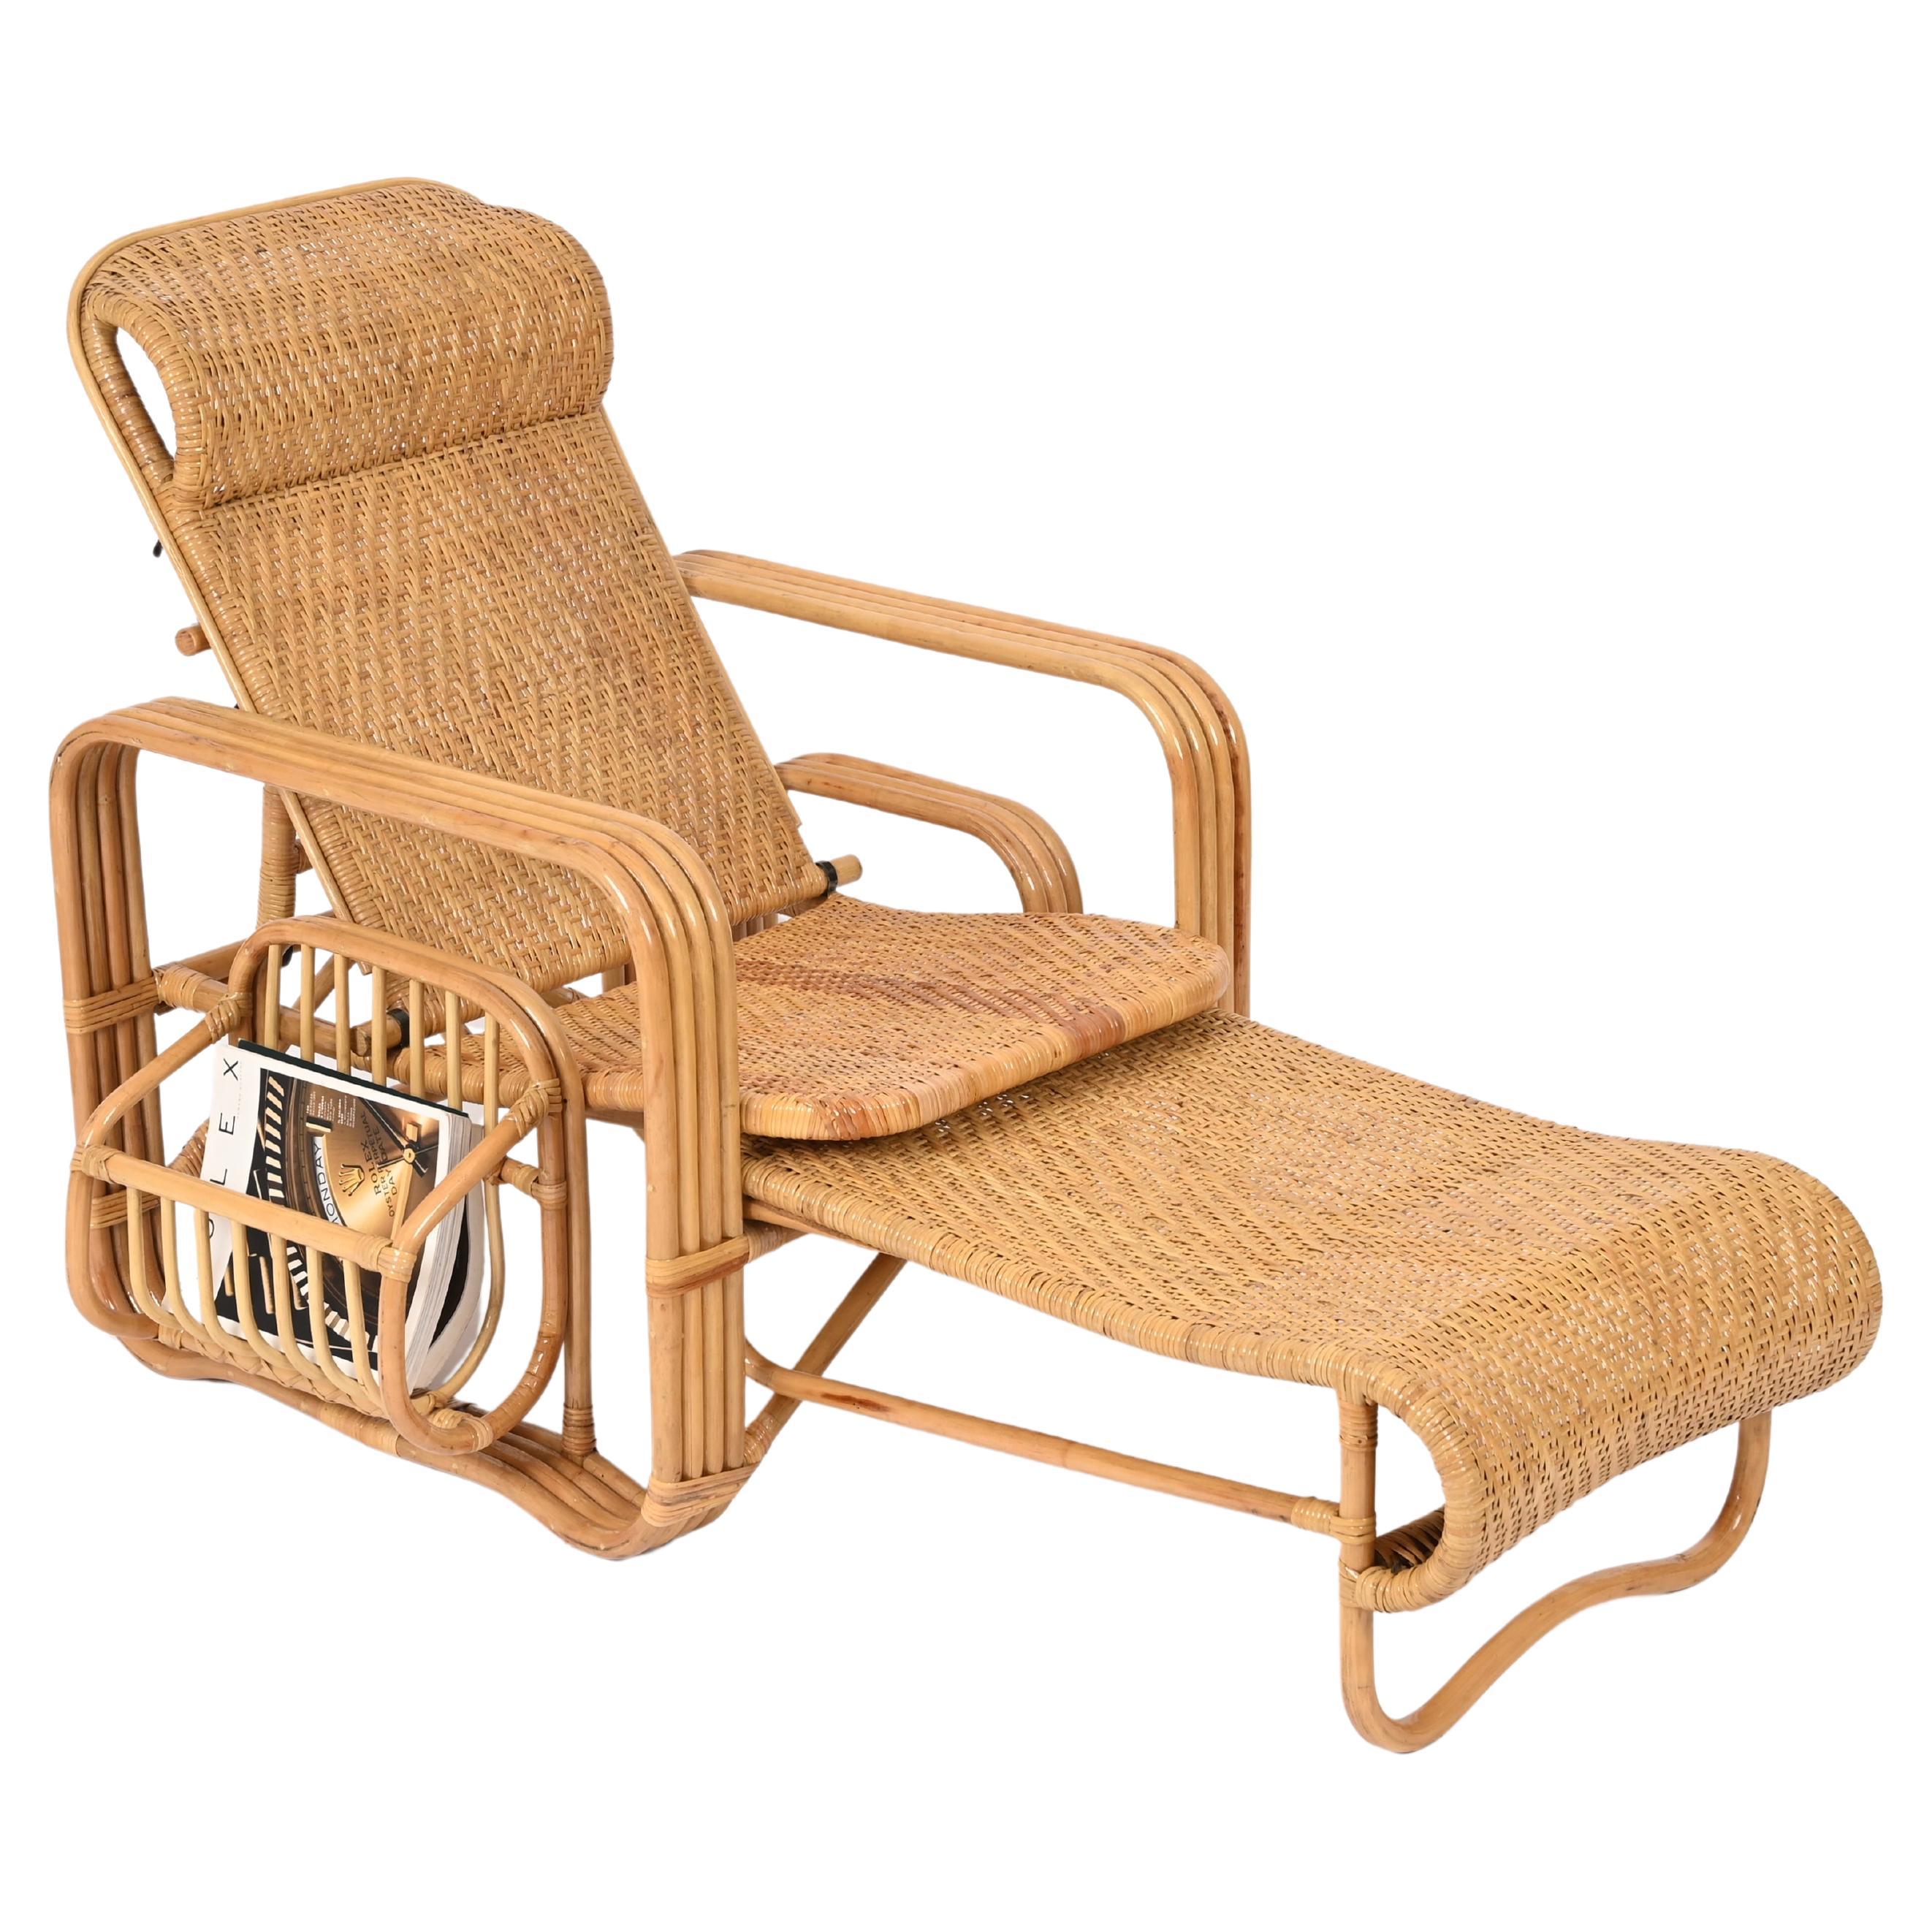 Chaise longue/chaise longue réglable en osier tressé et rotin, Italie, années 1970 